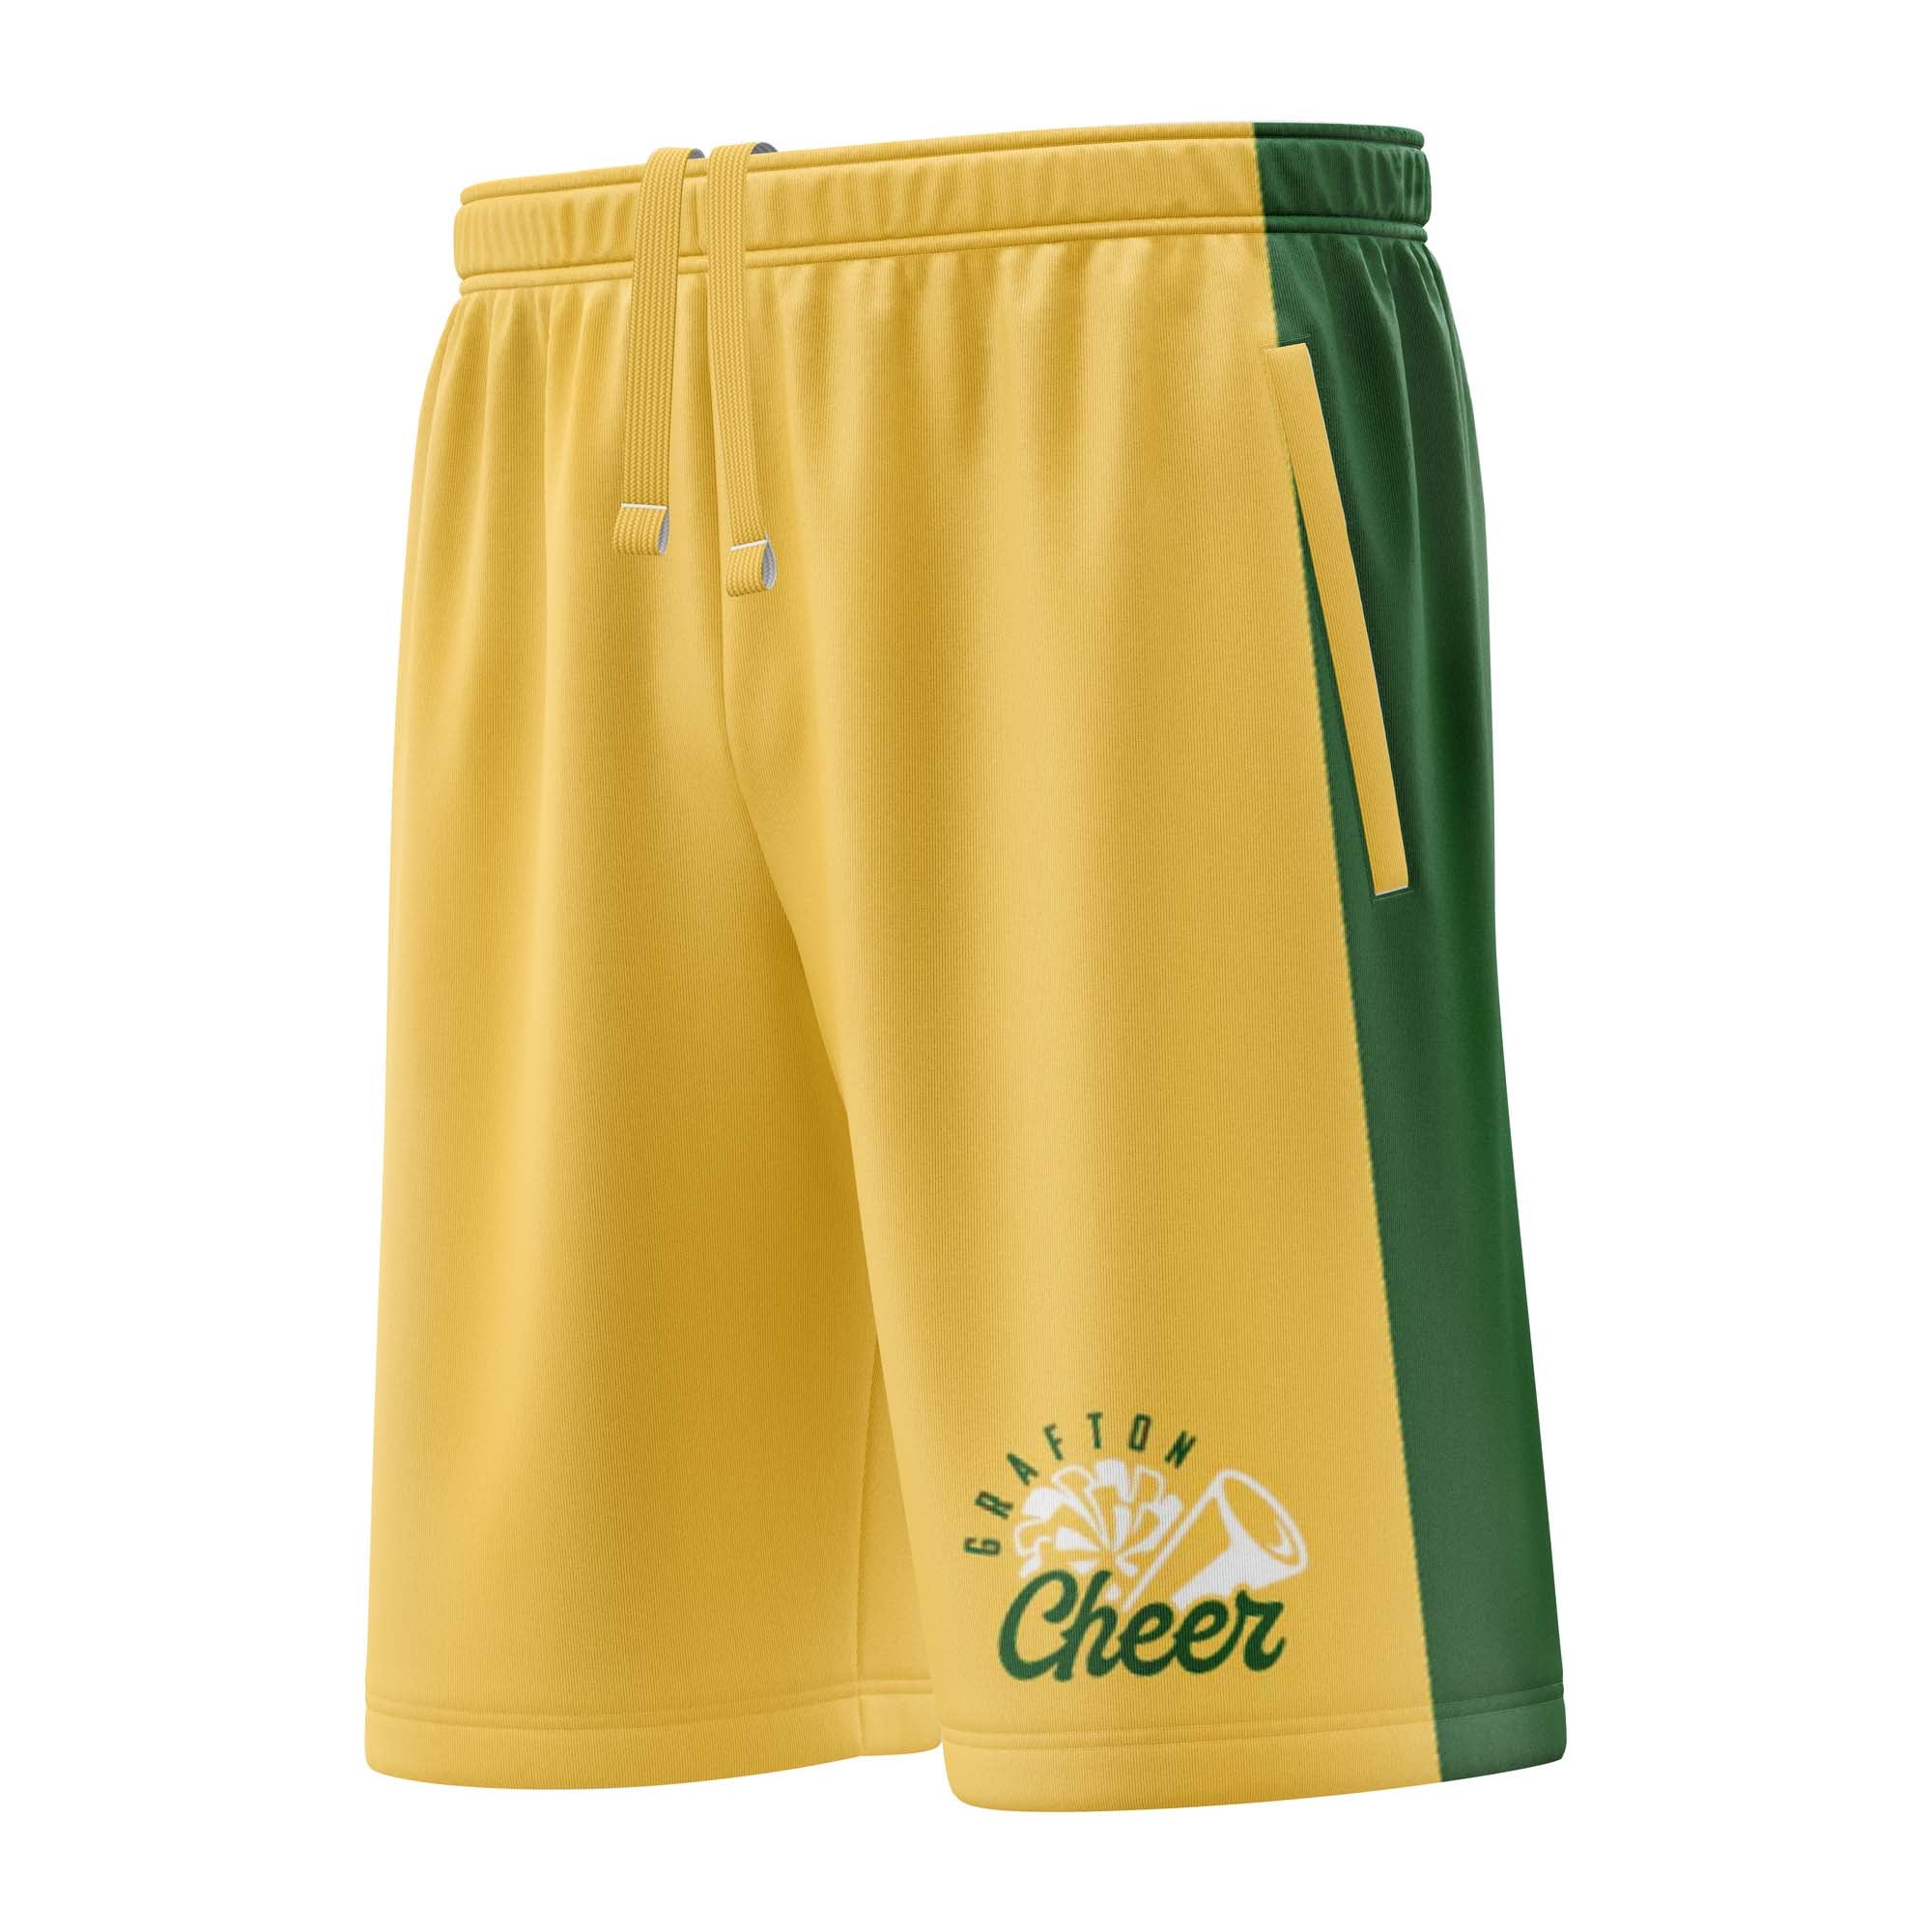 GRAFTON Cheer Shorts